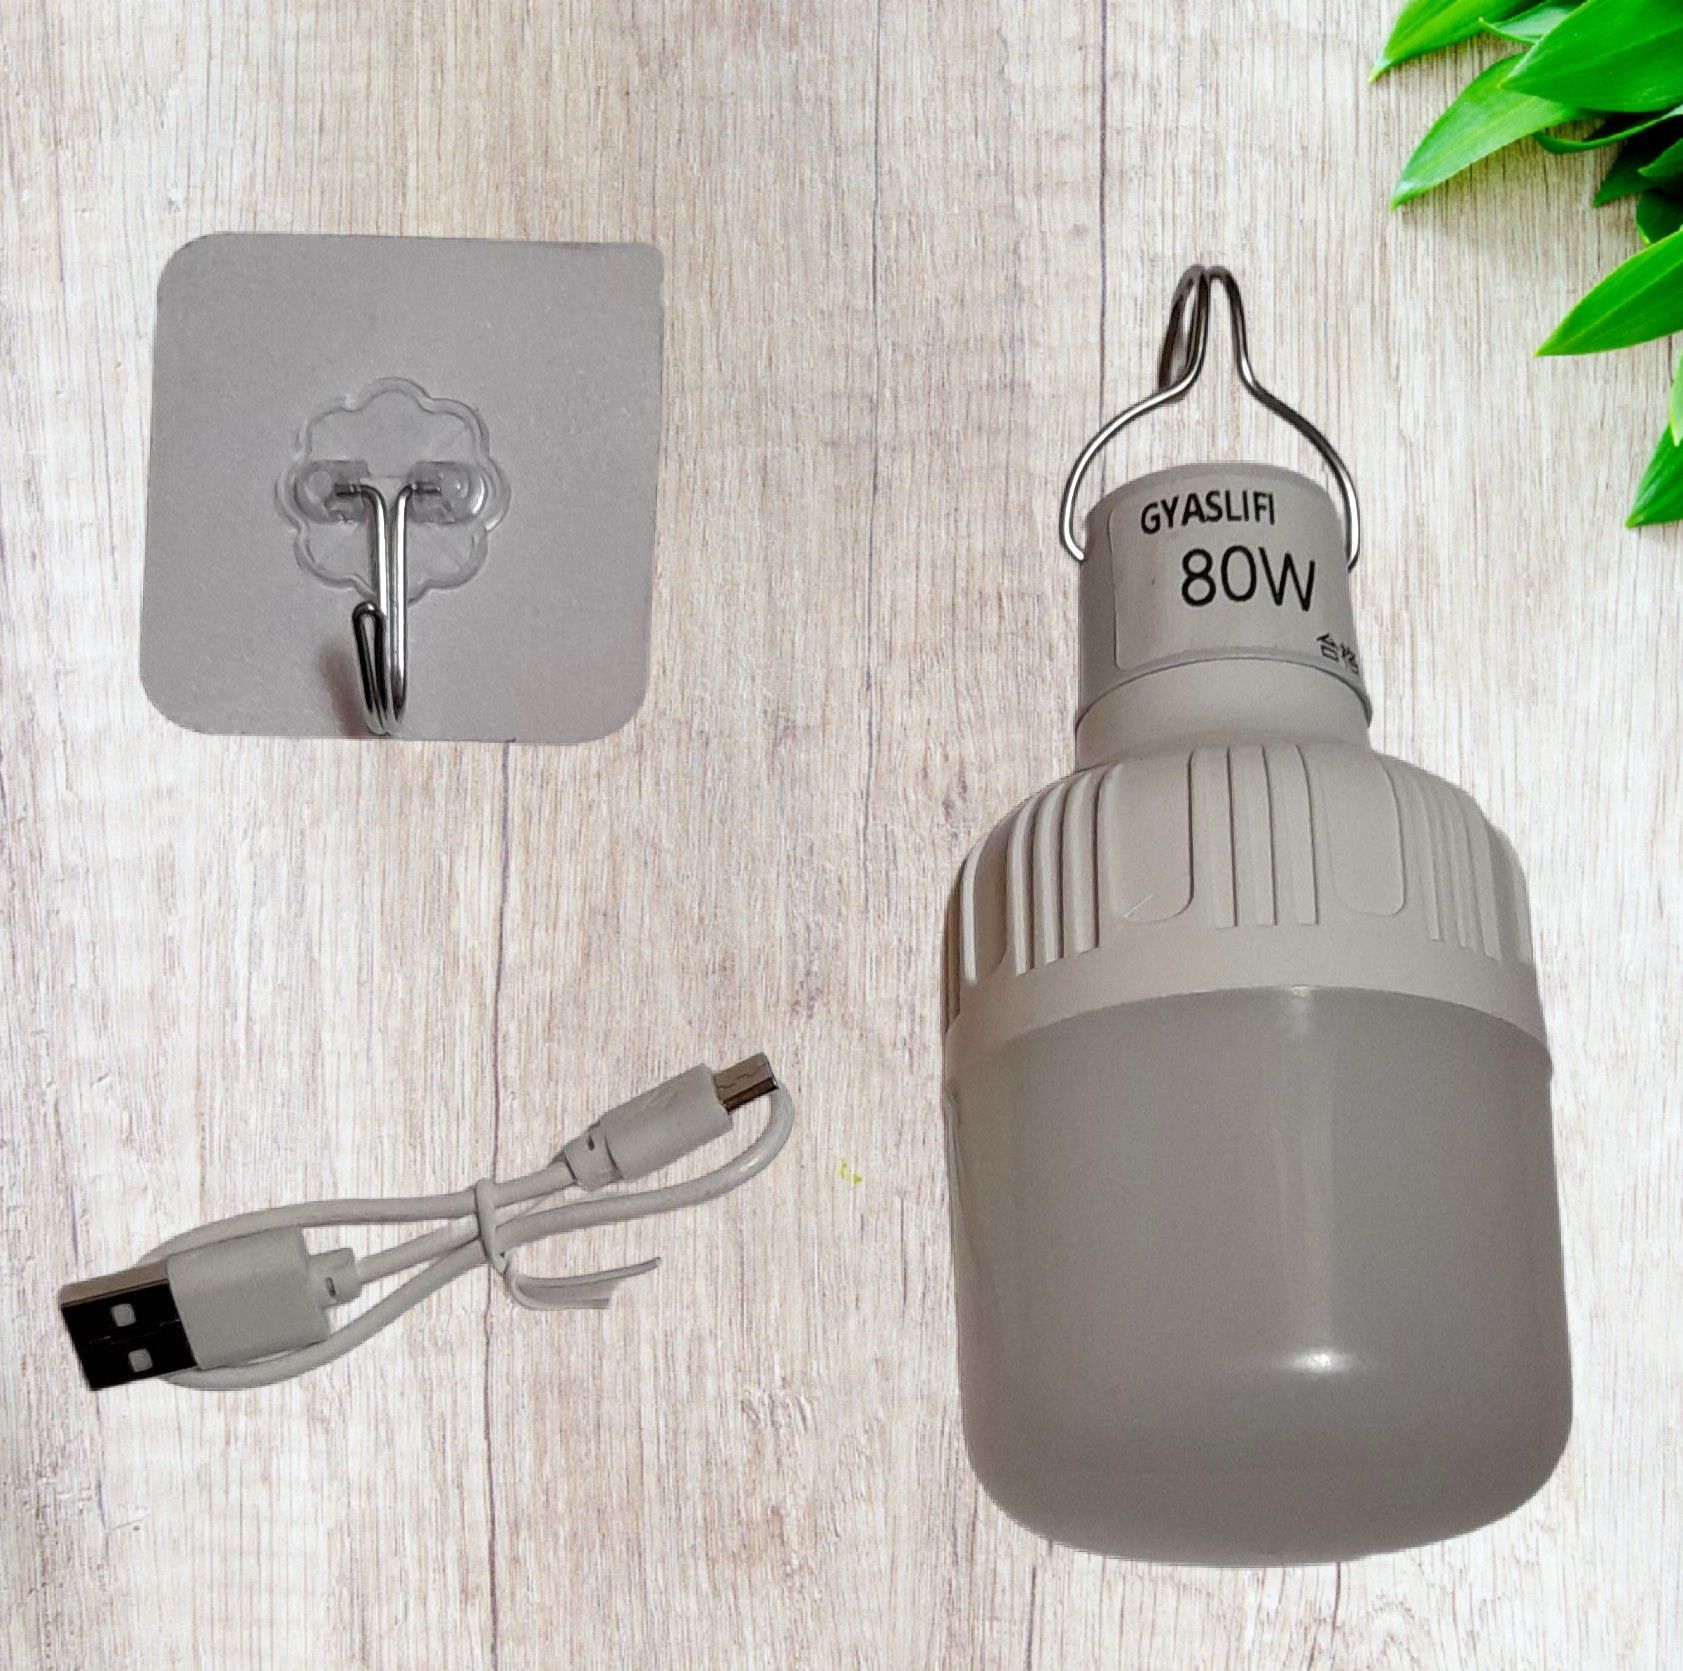 Акумуляторна LED лампочка туристична для кемпінгу чи дачі.
Працює само